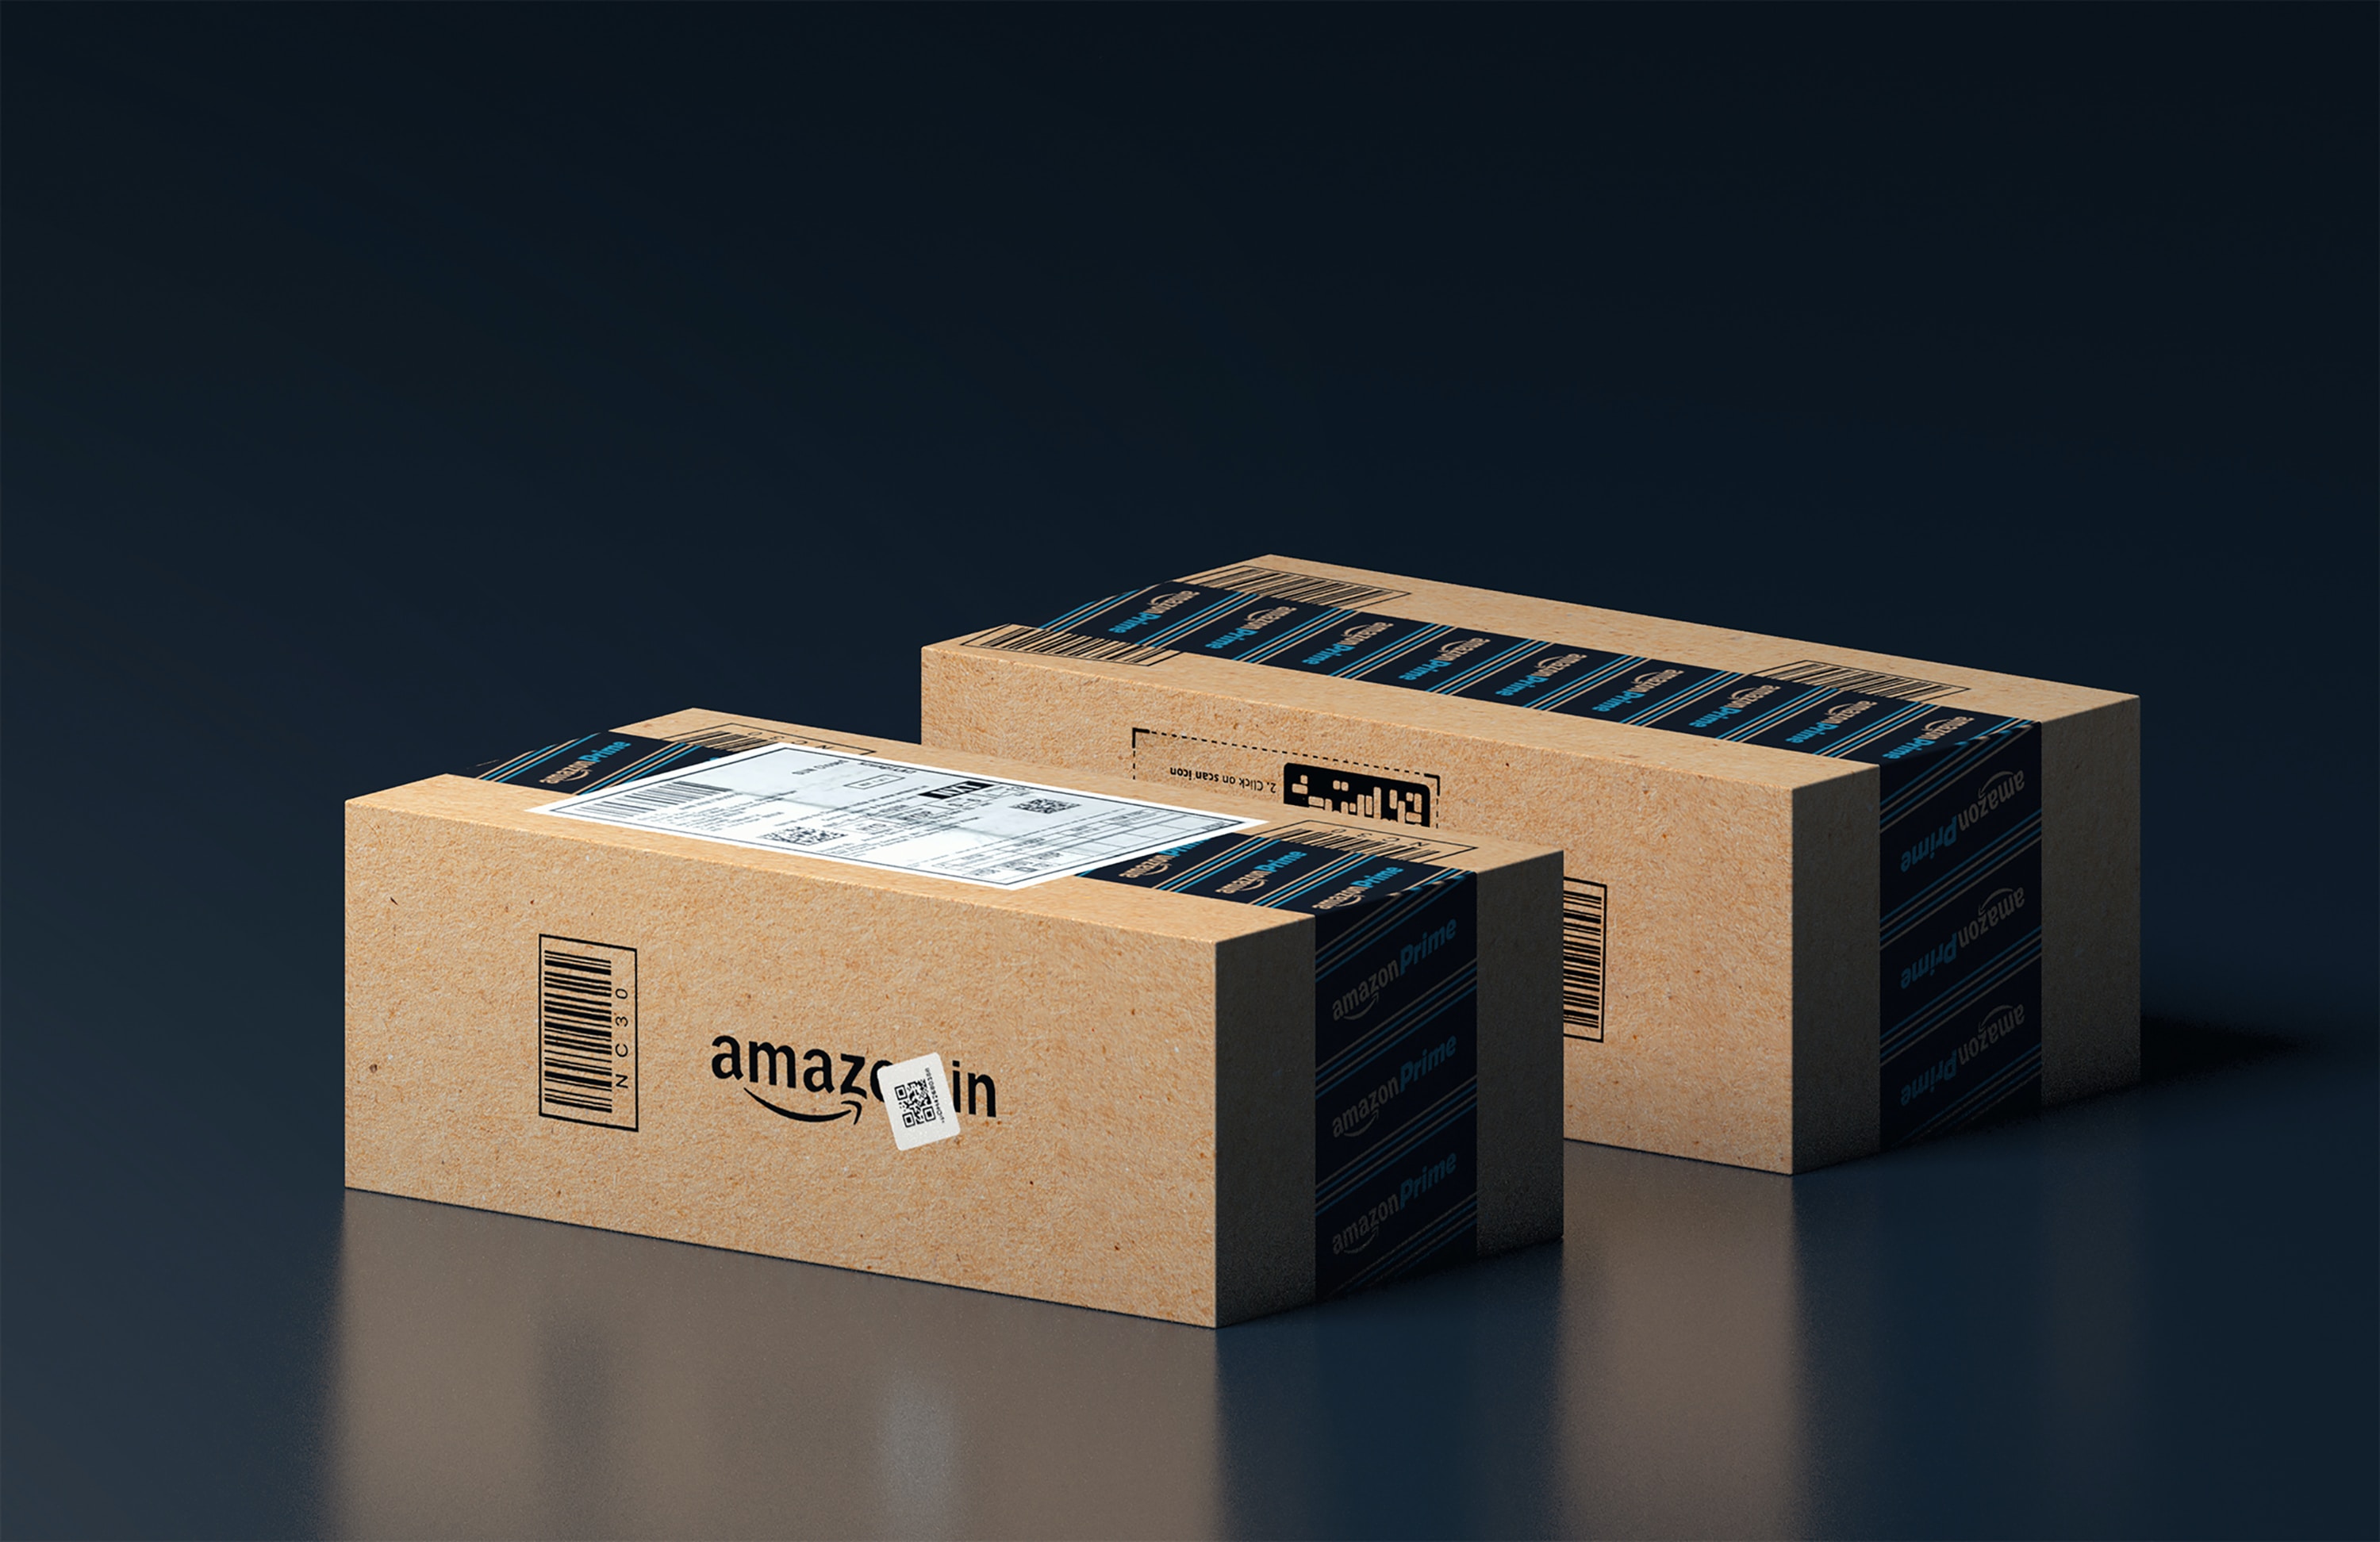 Les clients d'Amazon ne veulent plus de cartons d'emballage (selon Amazon)